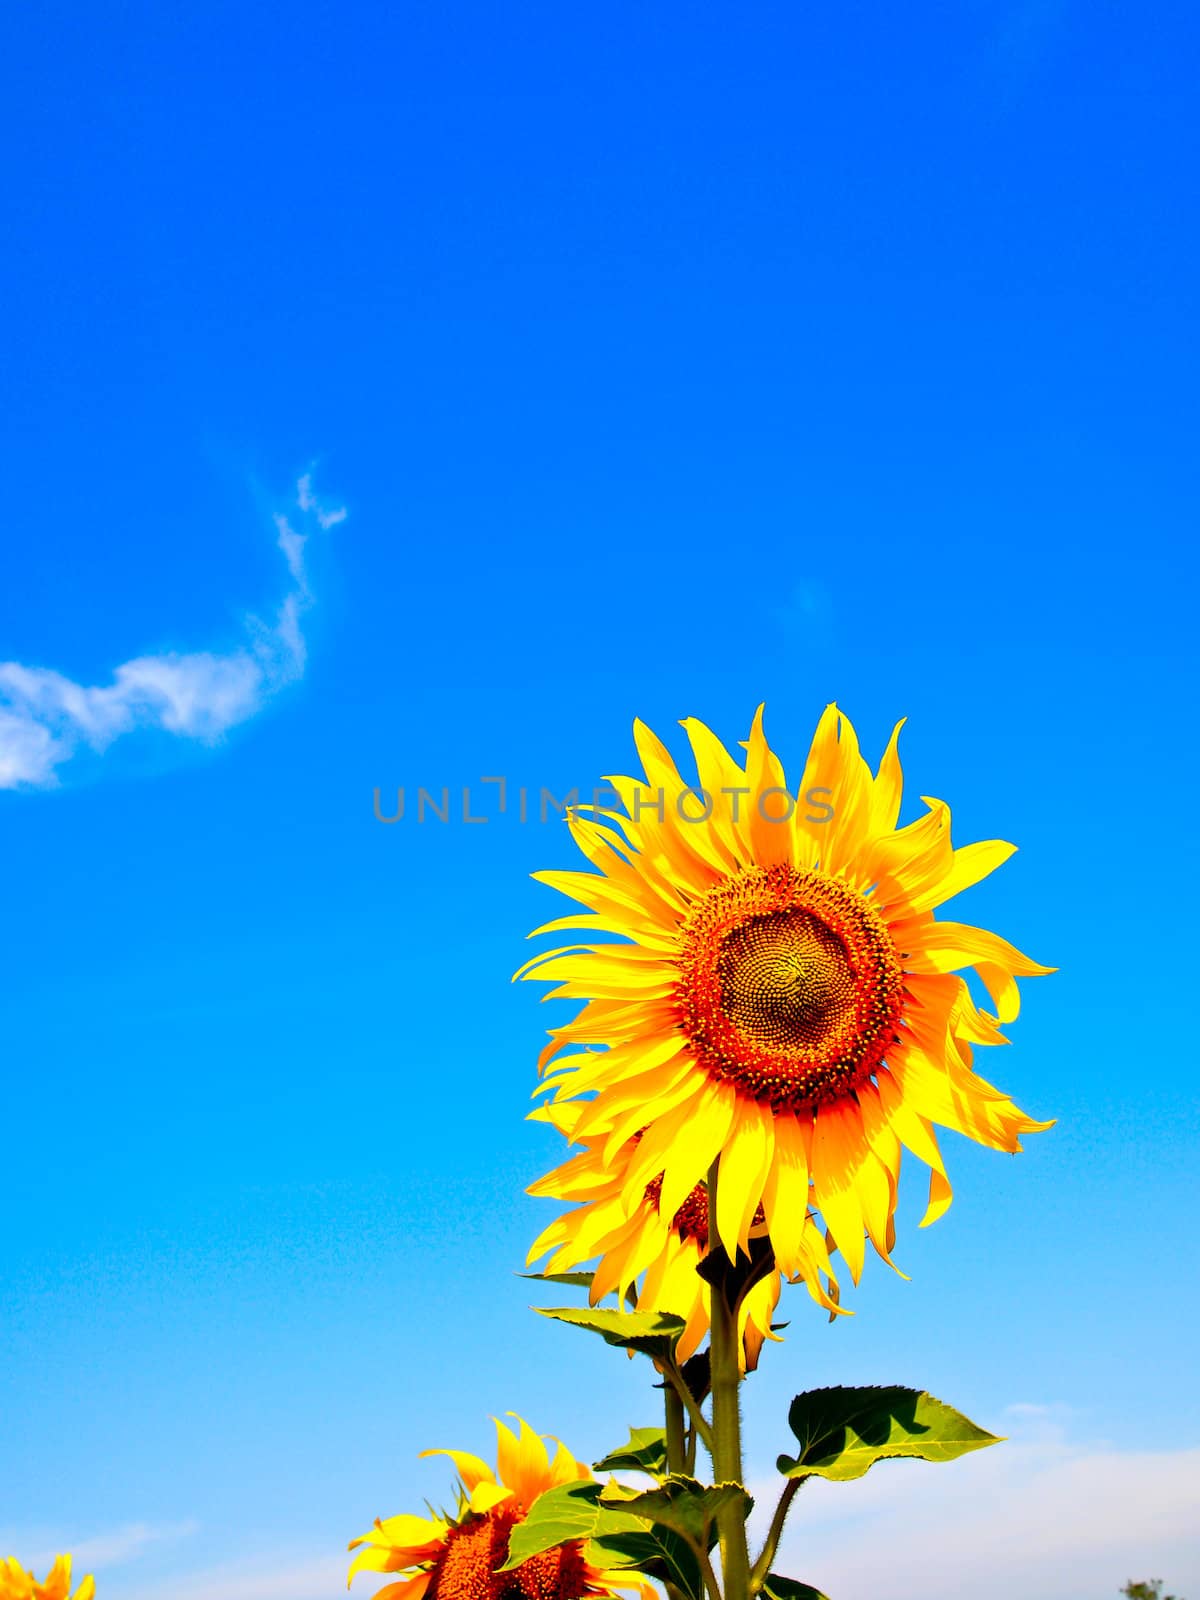 Sunflower with blue sky by gjeerawut